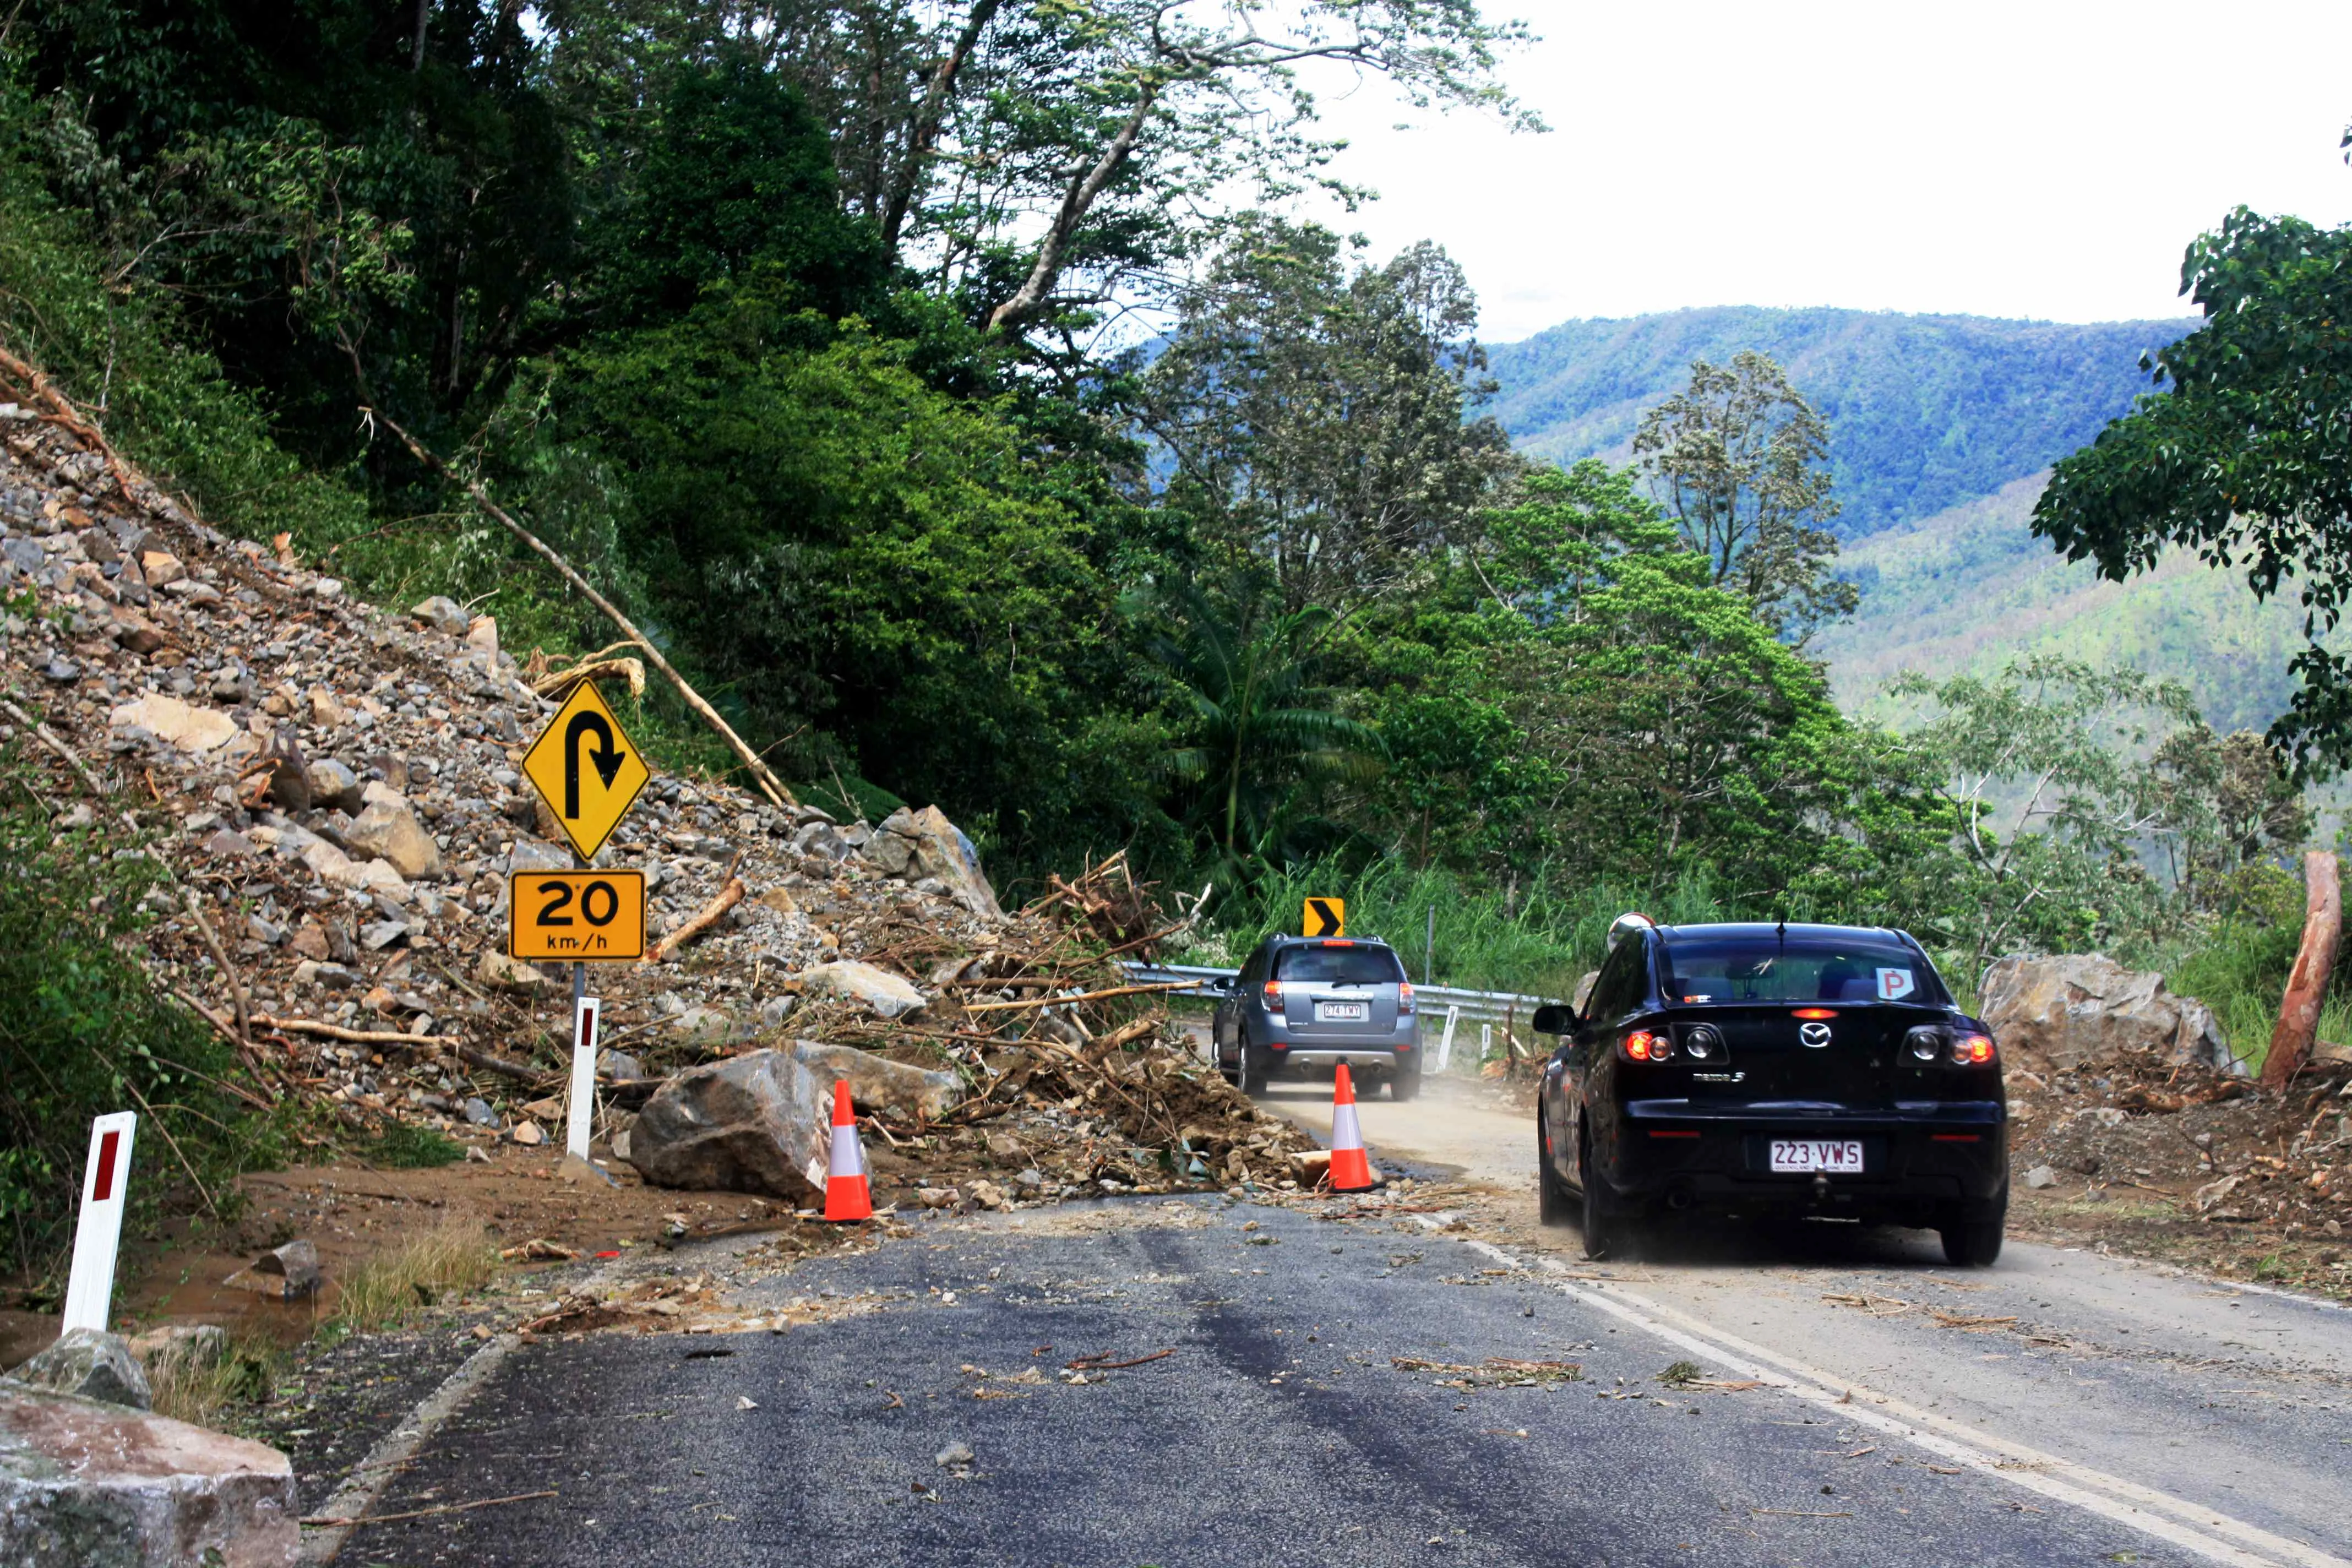 Potential hazards landslide blocking the road. 